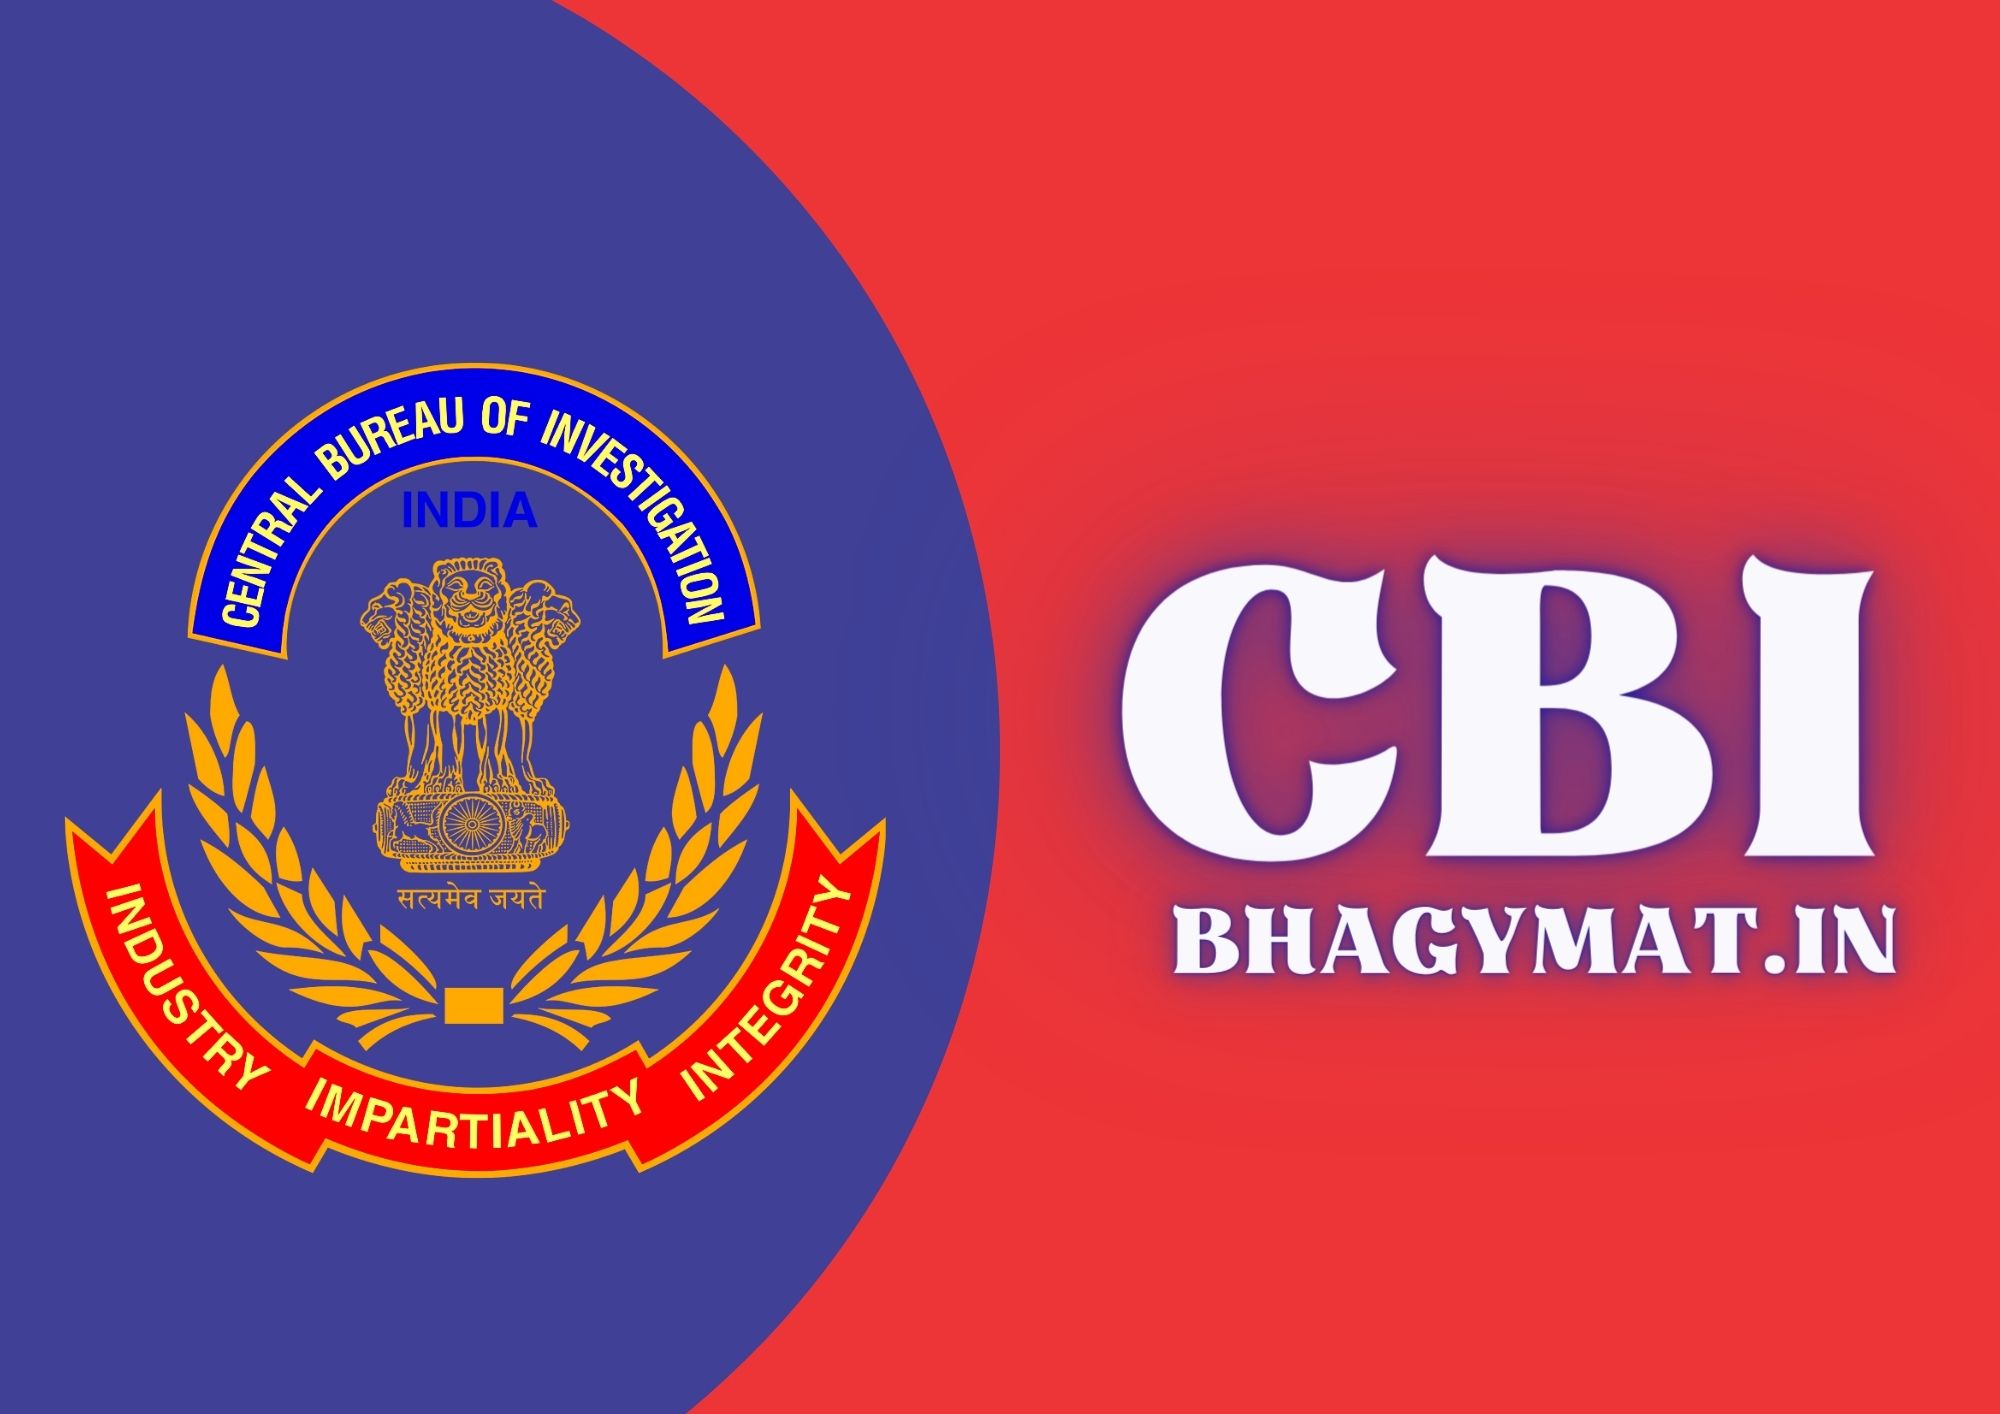 सीबीआई का फुल फॉर्म क्या होता है? (CBI Ka Full Form Kya Hota Hai) - Full Form Of CBI In Hindi - CBI Ka Full Form Kya Hai In Hindi